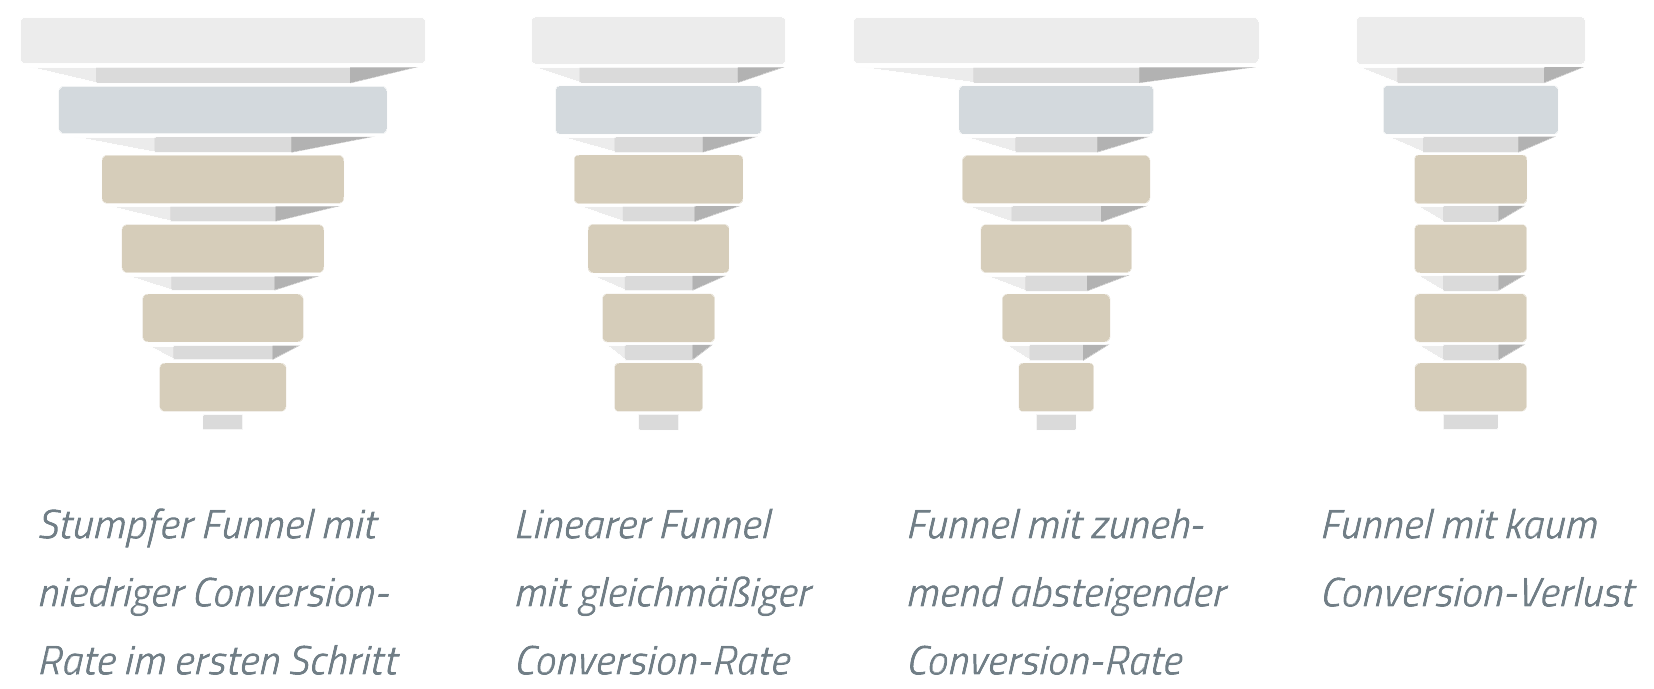 Darstellung der Conversions im Sales Funnel